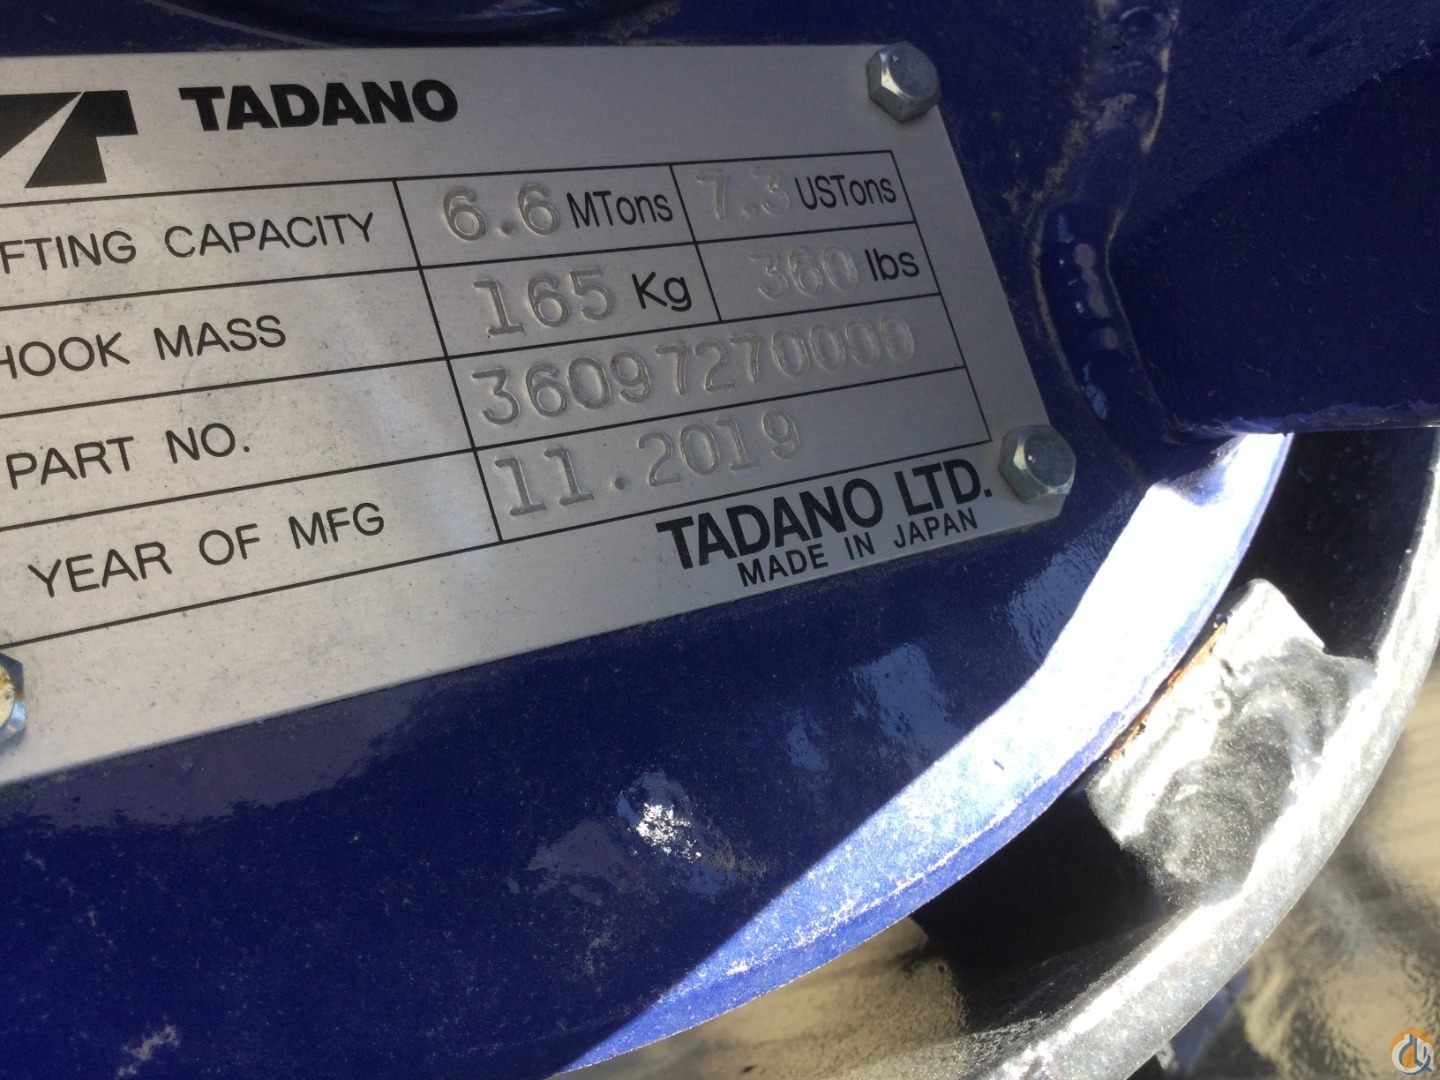 Tadano GR-1000XL